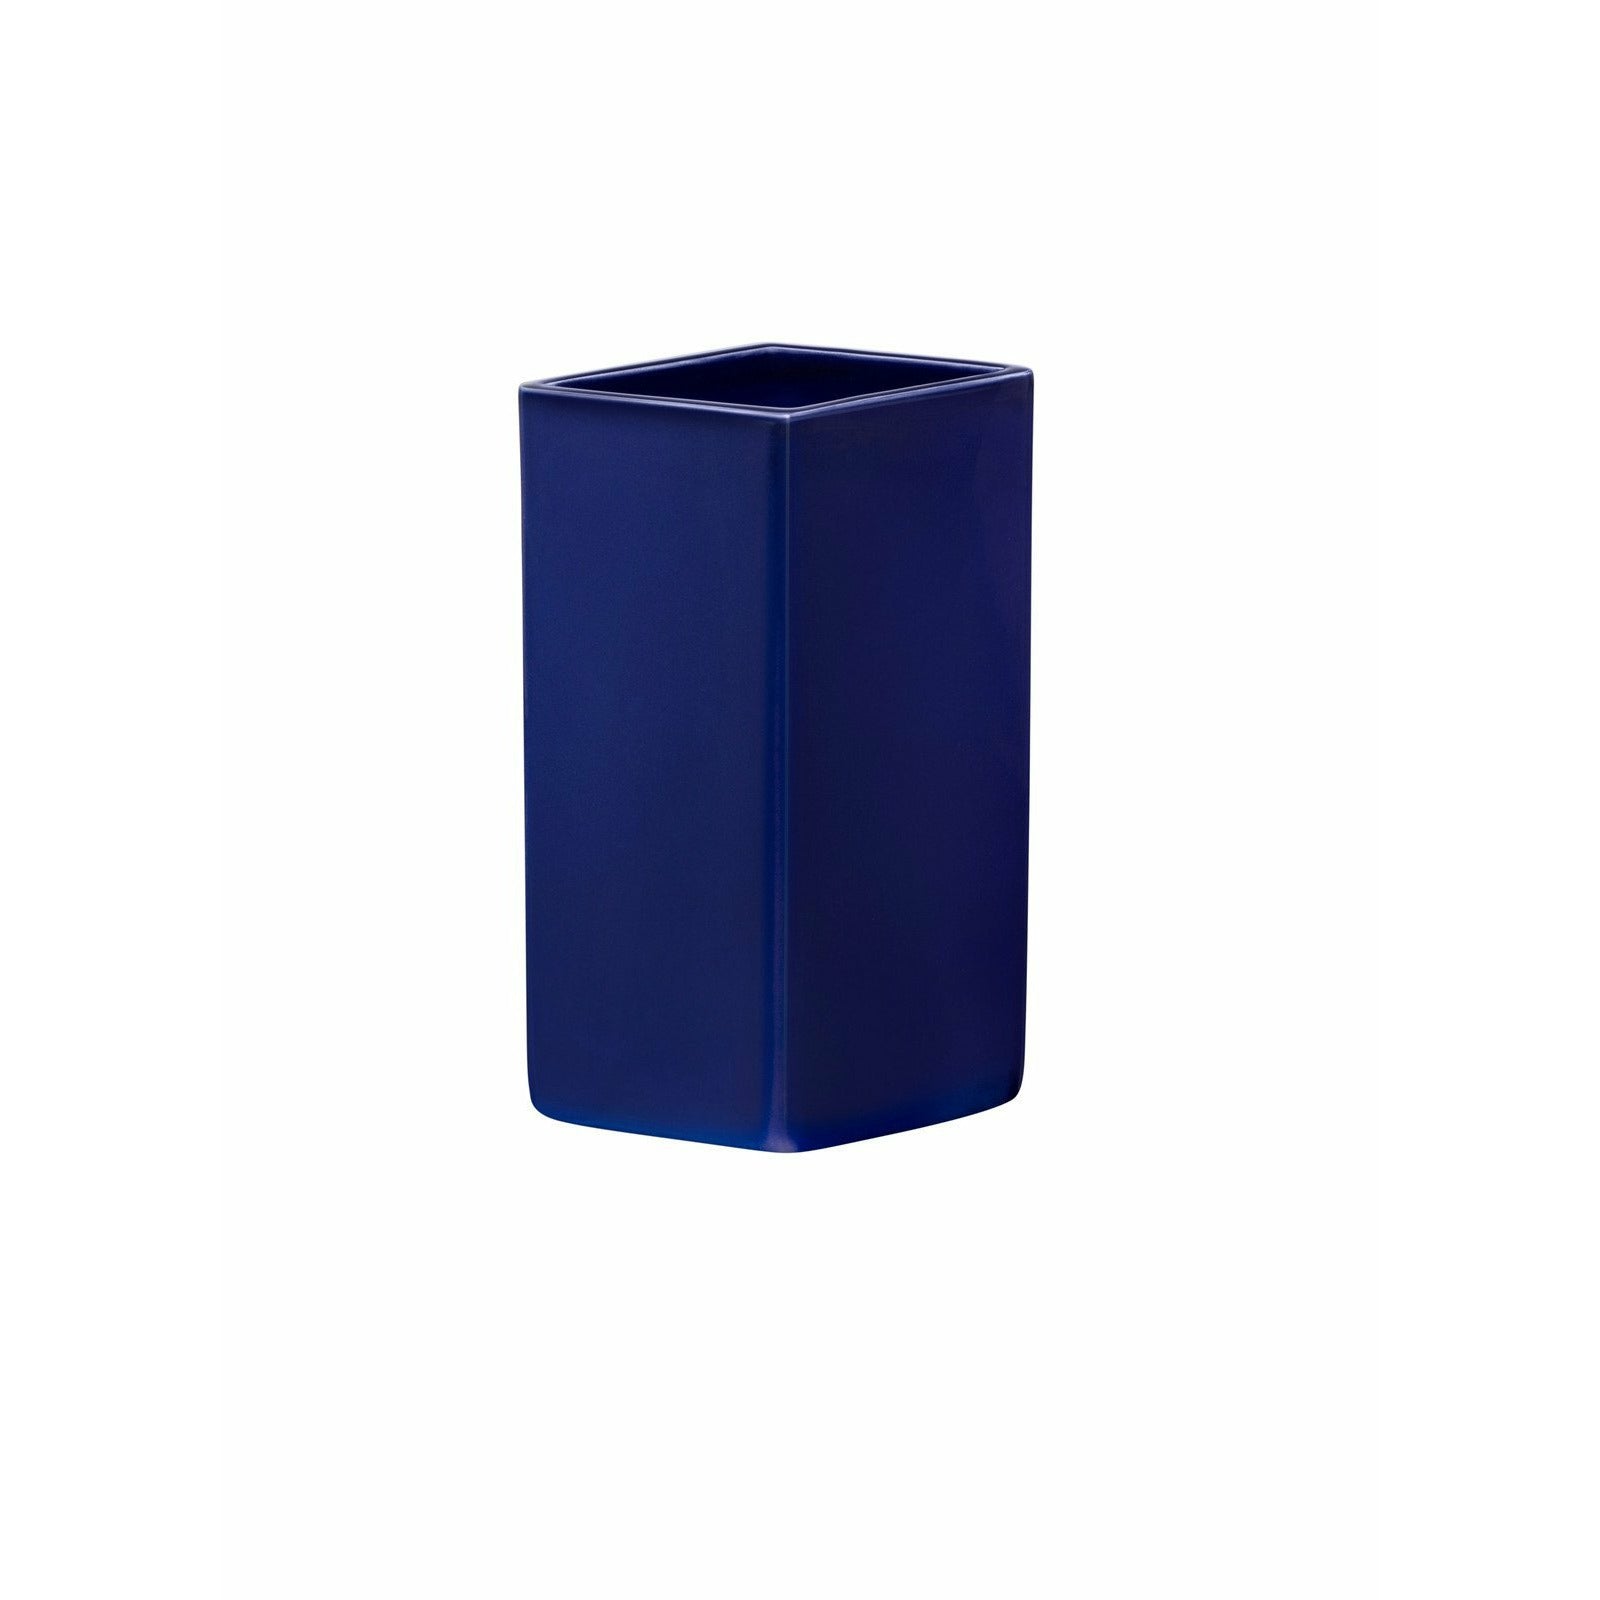 Iittala Ruutu keramisk vase mørkeblå, 18 cm